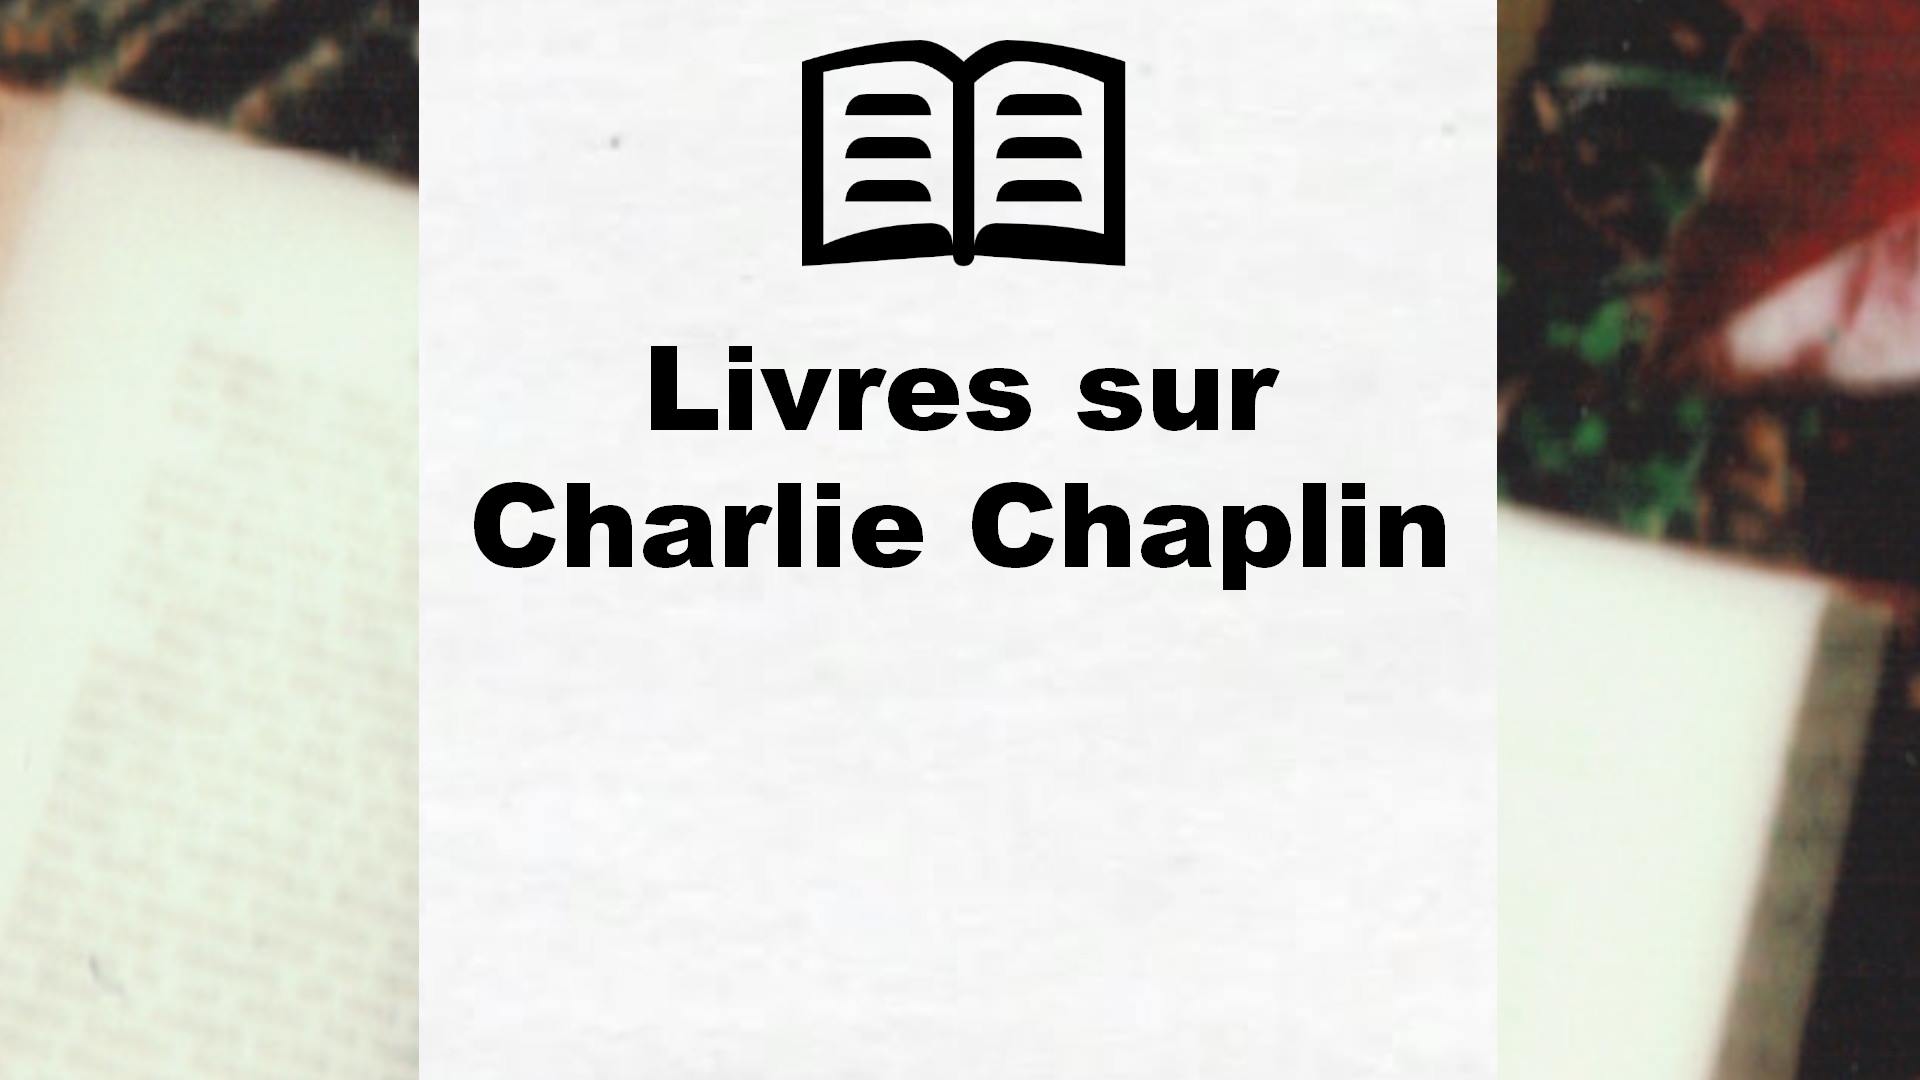 Livres sur Charlie Chaplin